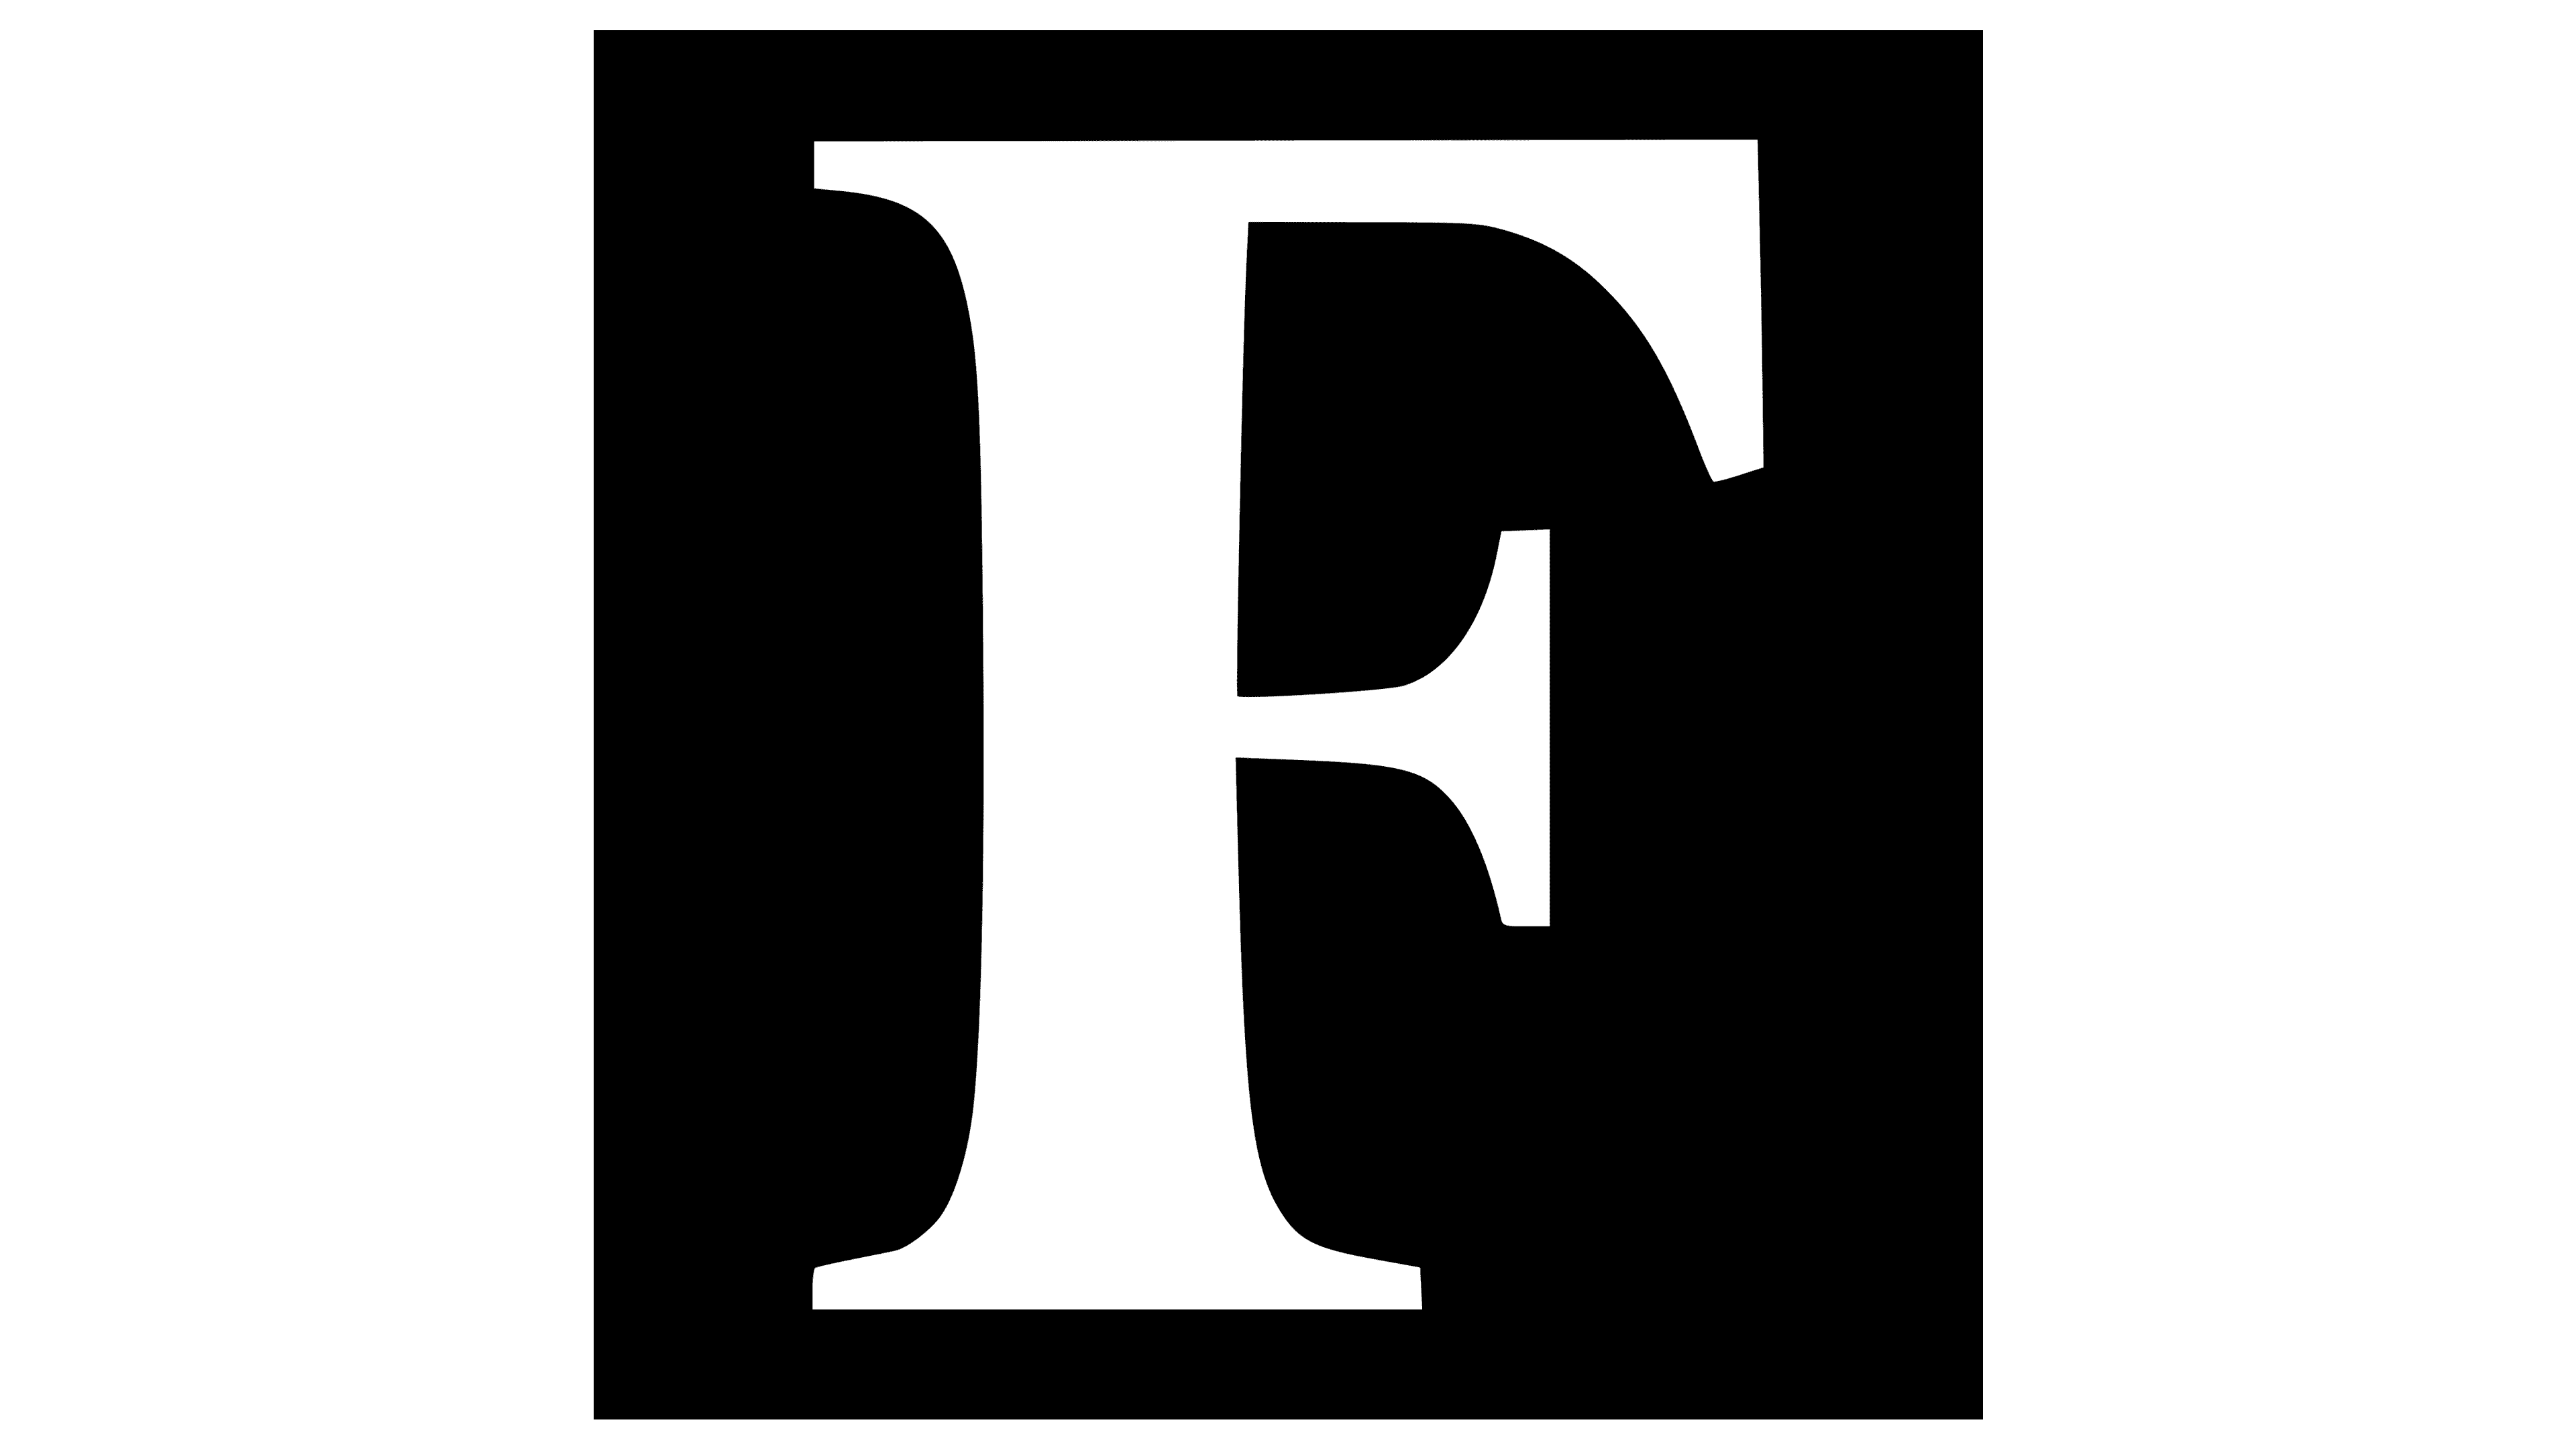 Forbes.com logo